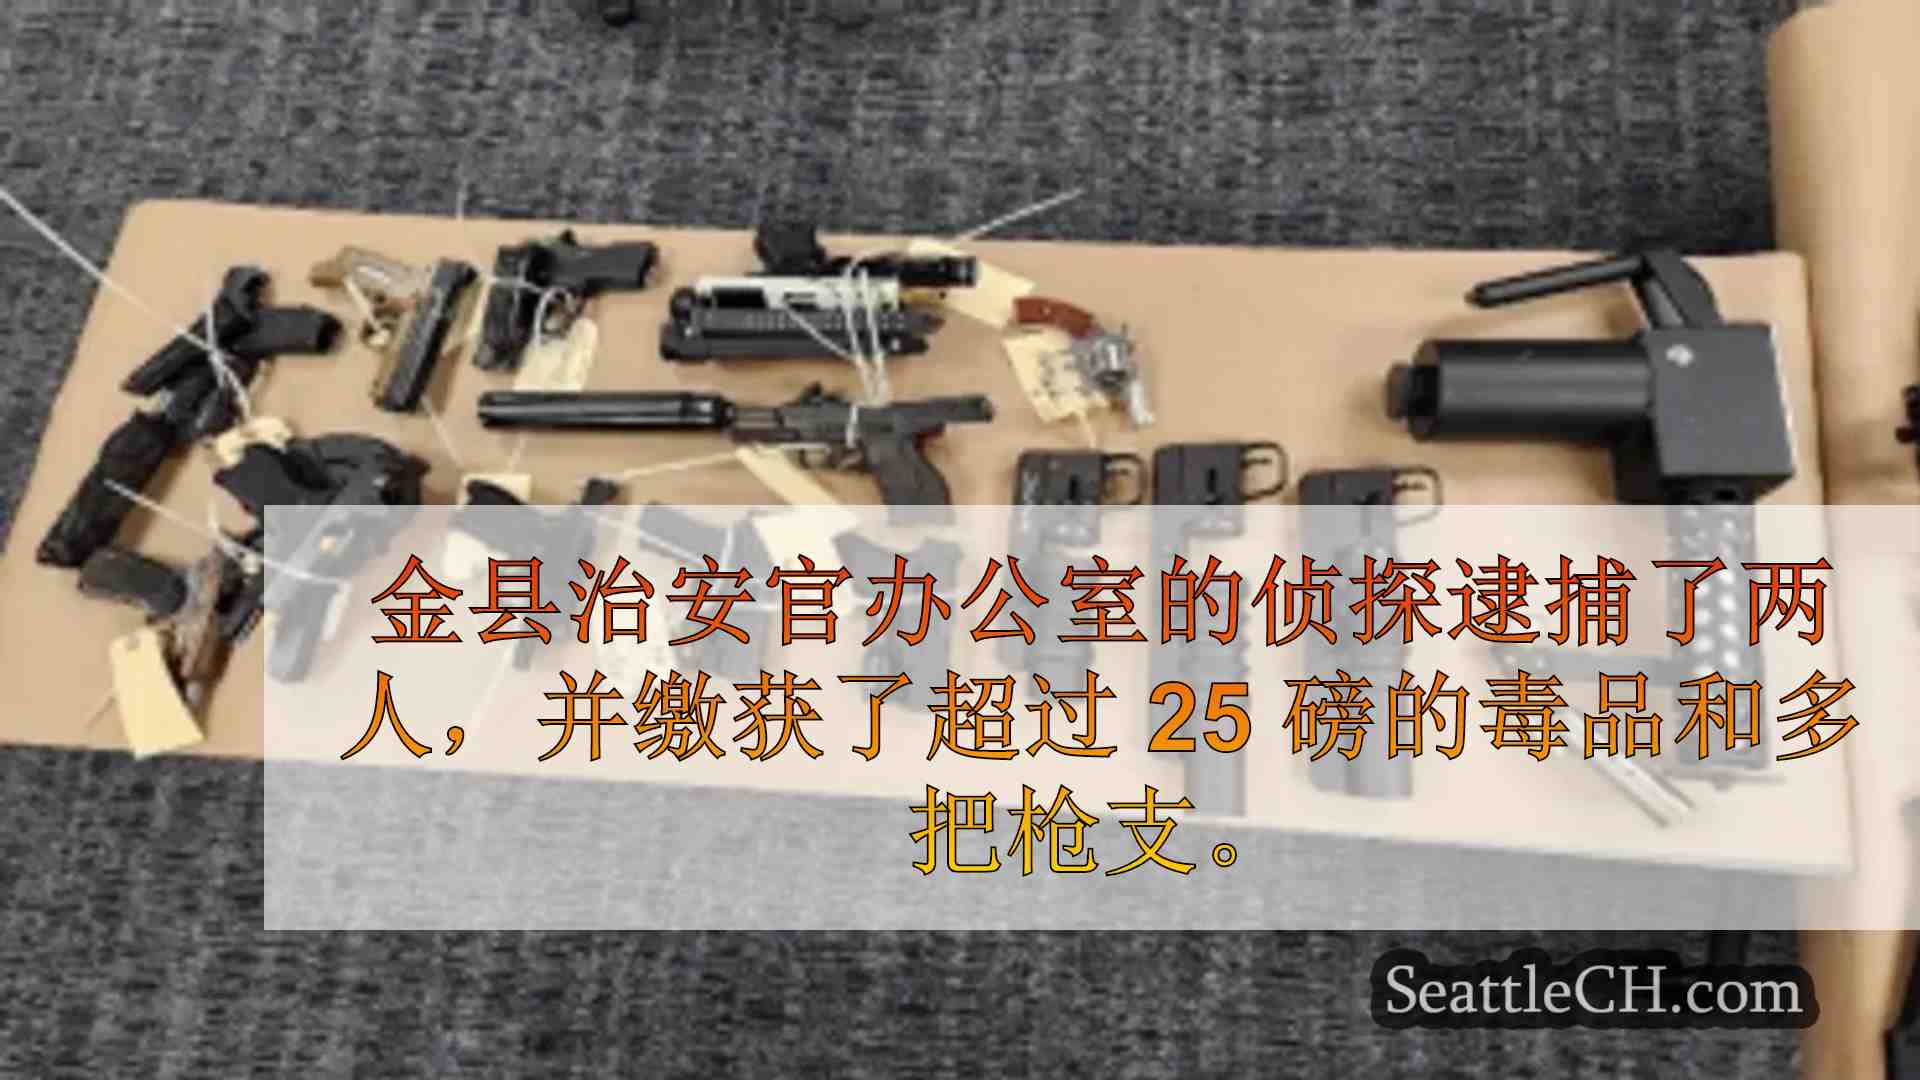 金县副警长在枪击案后逮捕两人，缴获超过 25 磅毒品和枪支